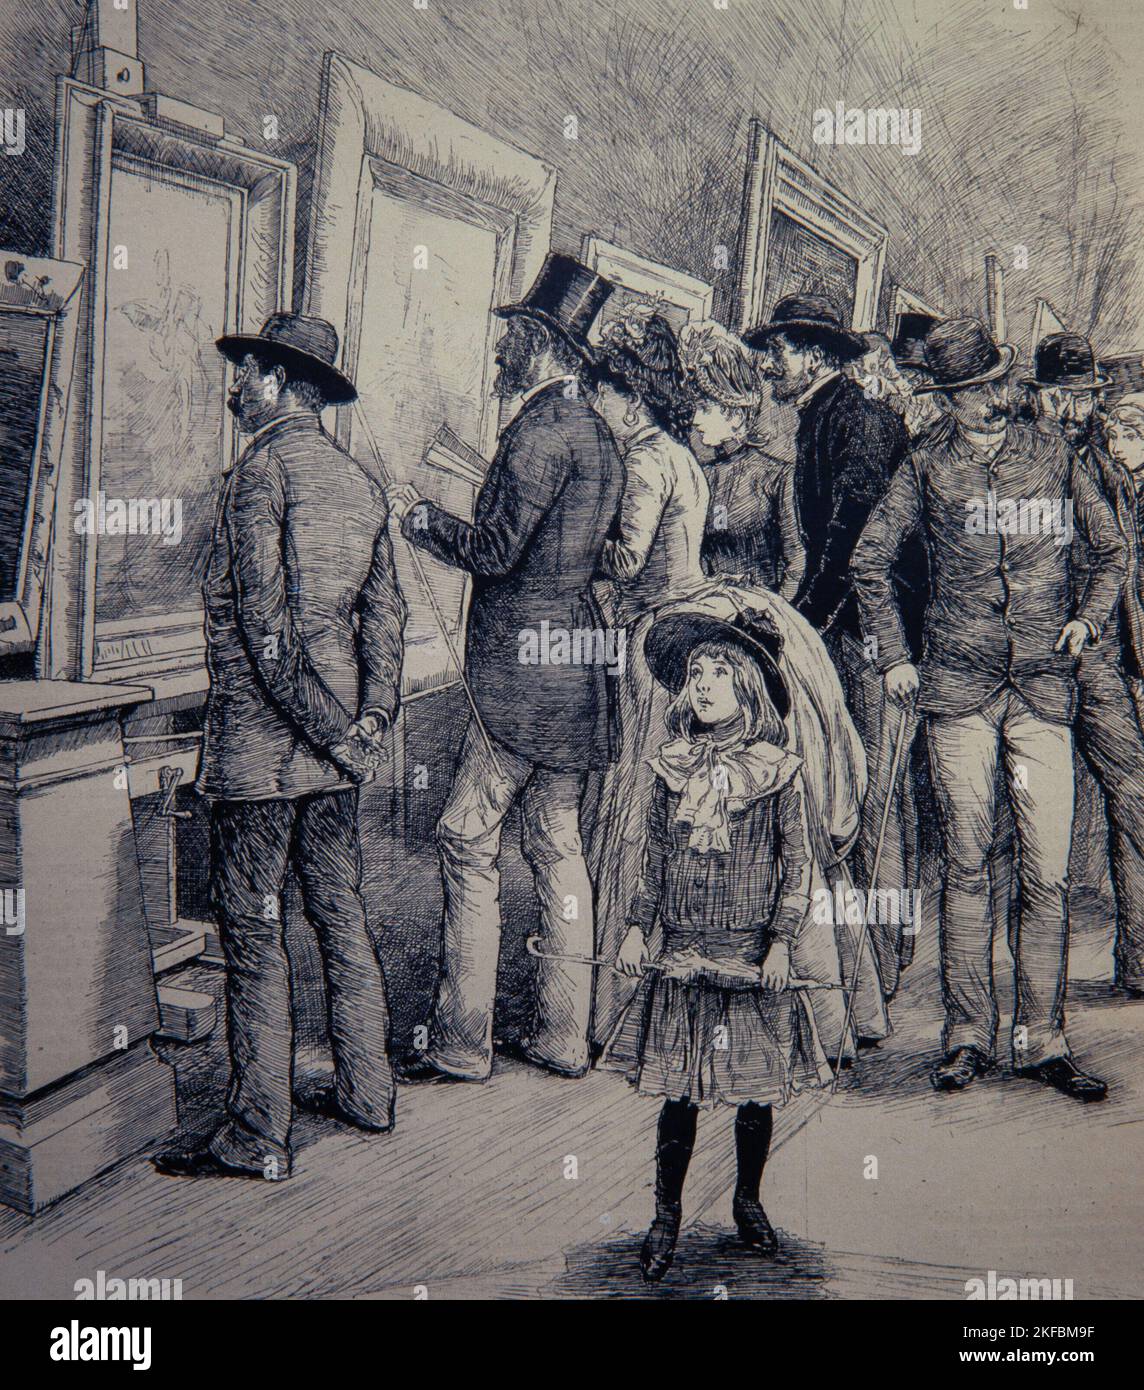 J.LLUIS PELLICER/ EXPOSICIÓN DE PINTURA, 1886. DIBUJO. MUSEO DE HISTORIA DE BARCELONA. Stockfoto